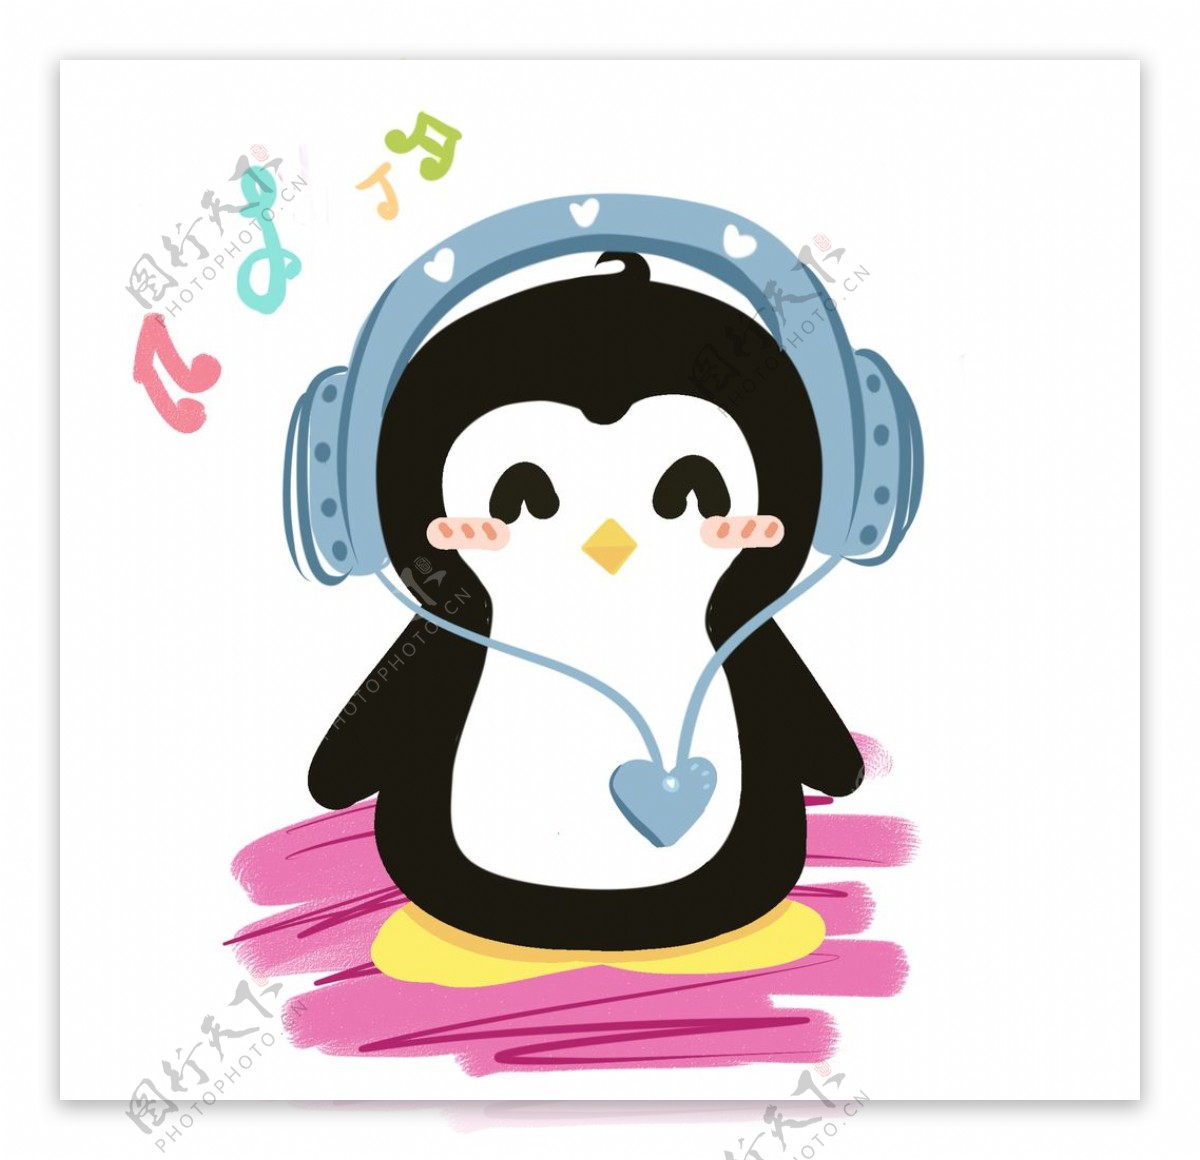 企鹅听音乐插画图片